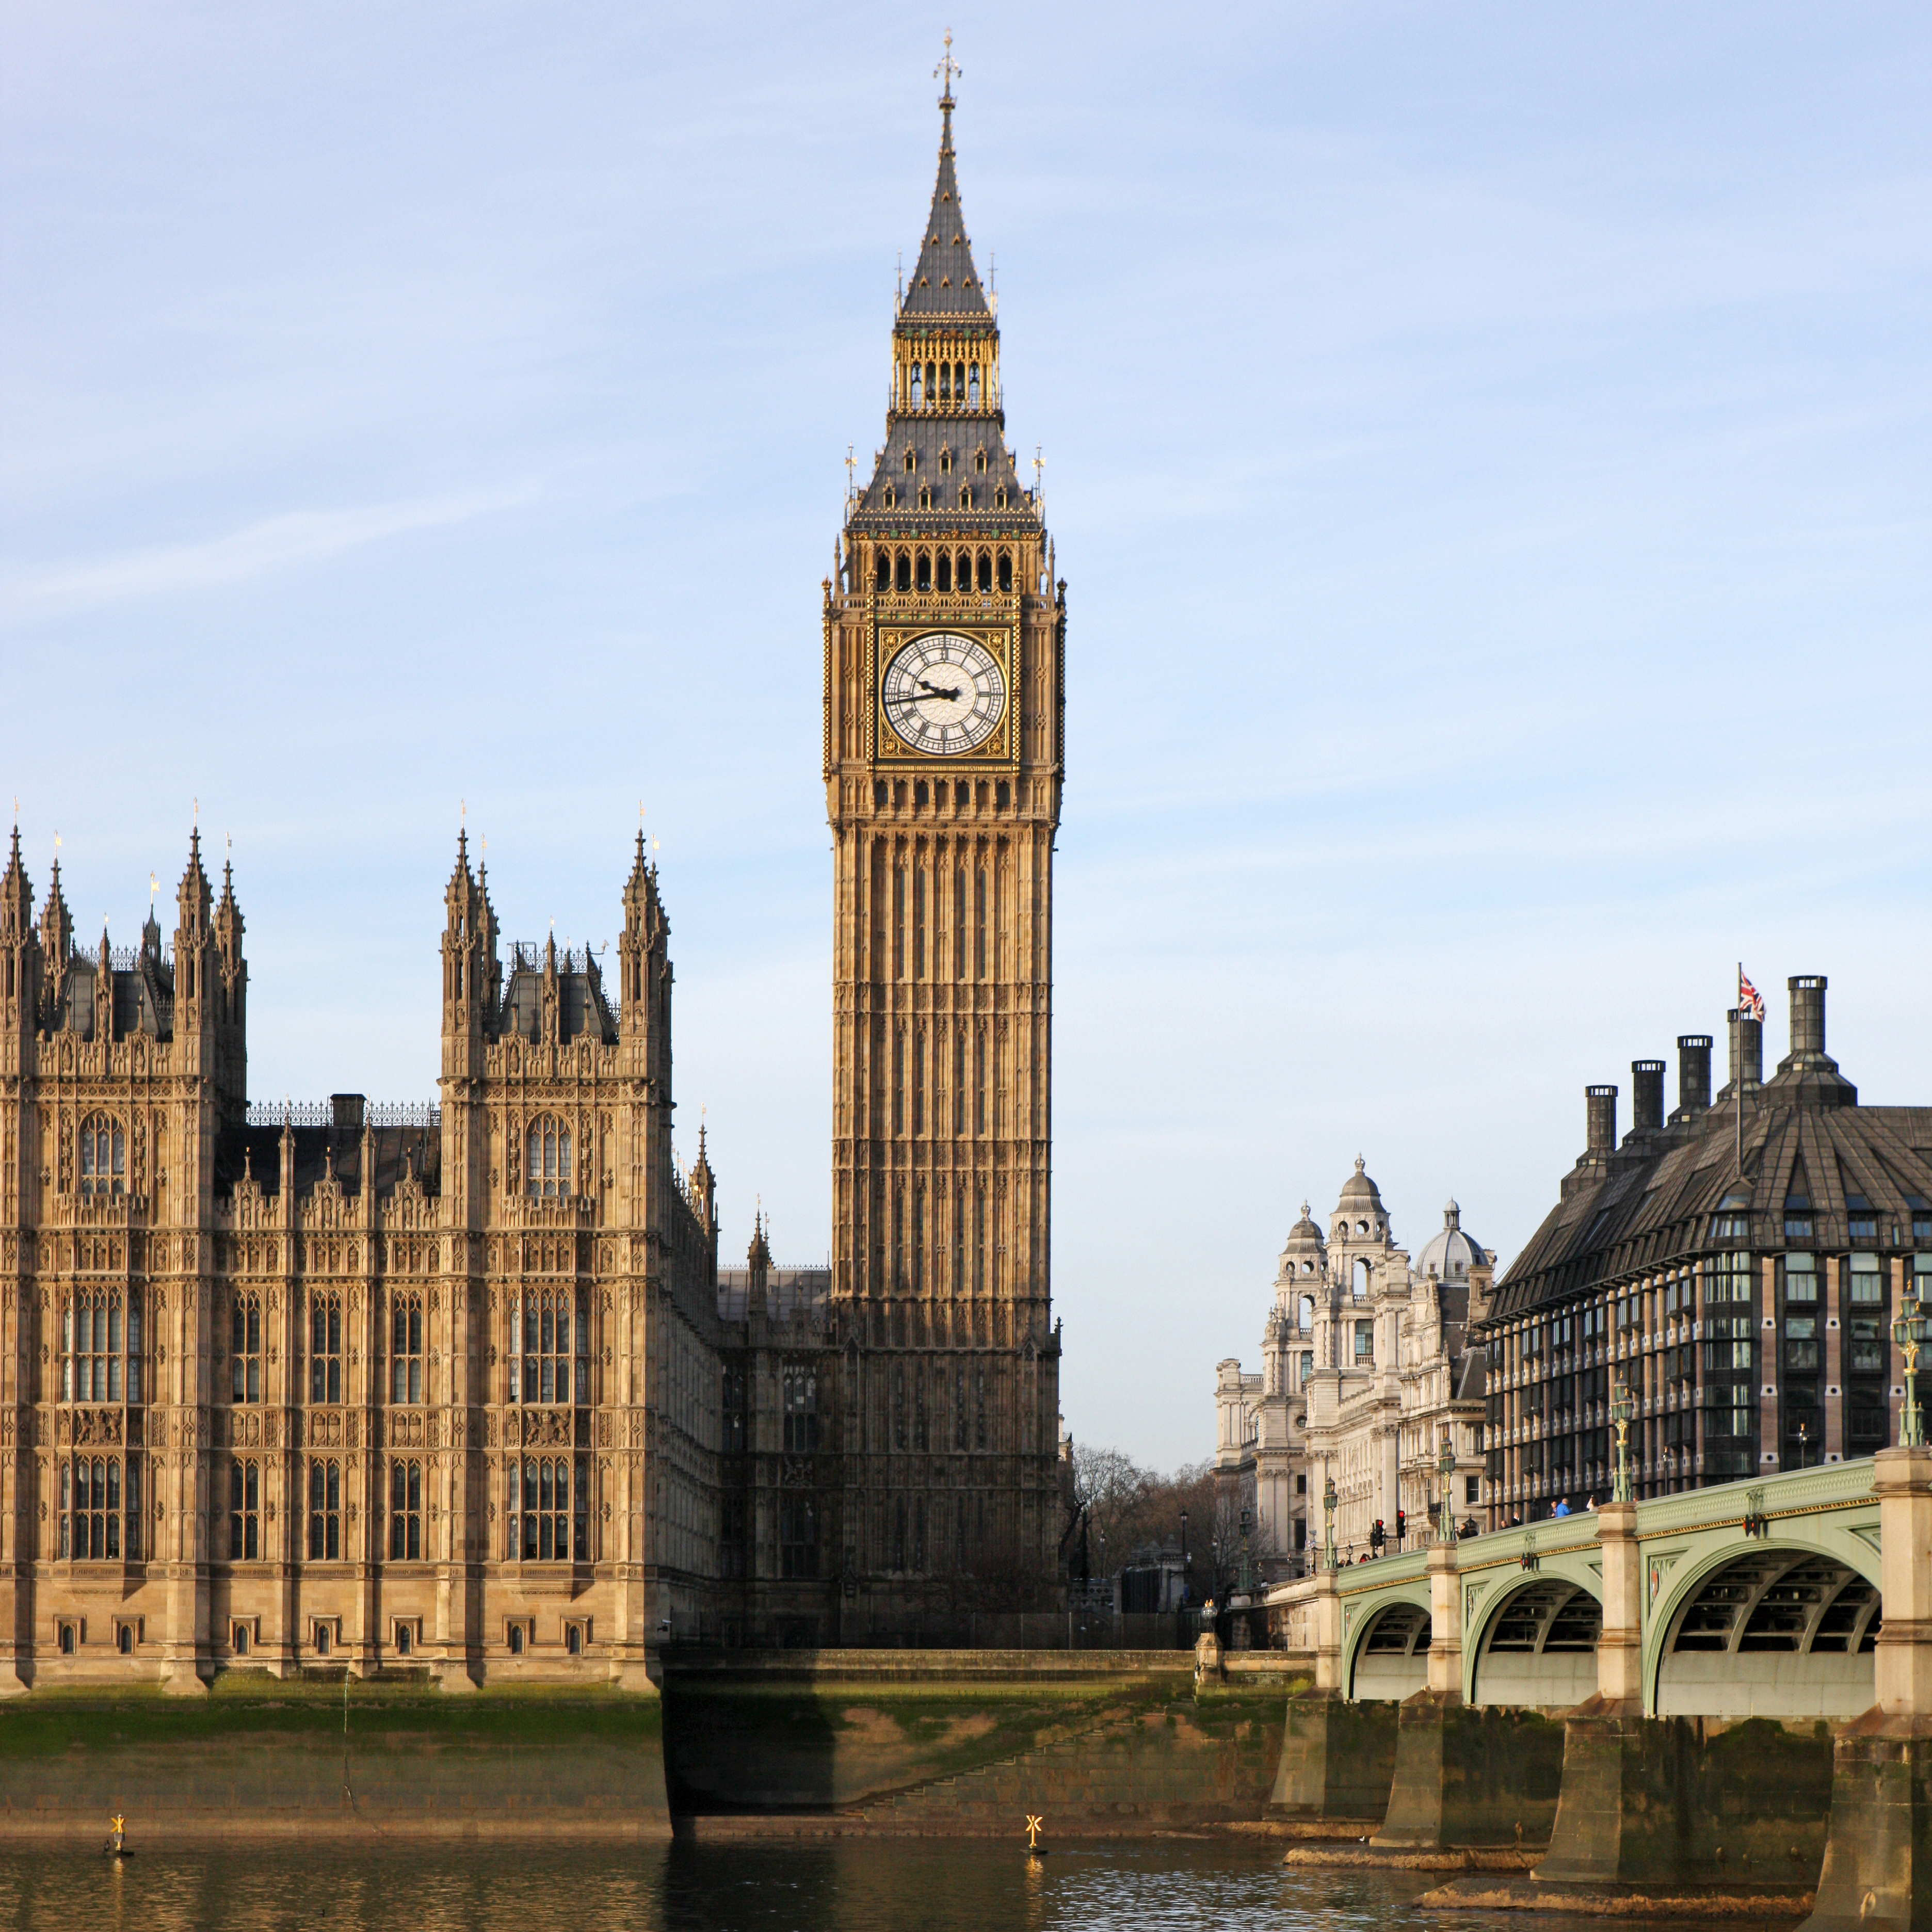 La segunda atracción del Reino Unido que figura en la lista es el Big Ben de Londres, o más exactamente, el reloj de la Torre Elizabeth. Construido en 1859 por los victorianos, era el reloj más grande del mundo en ese momento y se convirtió instantáneamente en una atracción turística mundial (Getty Images)